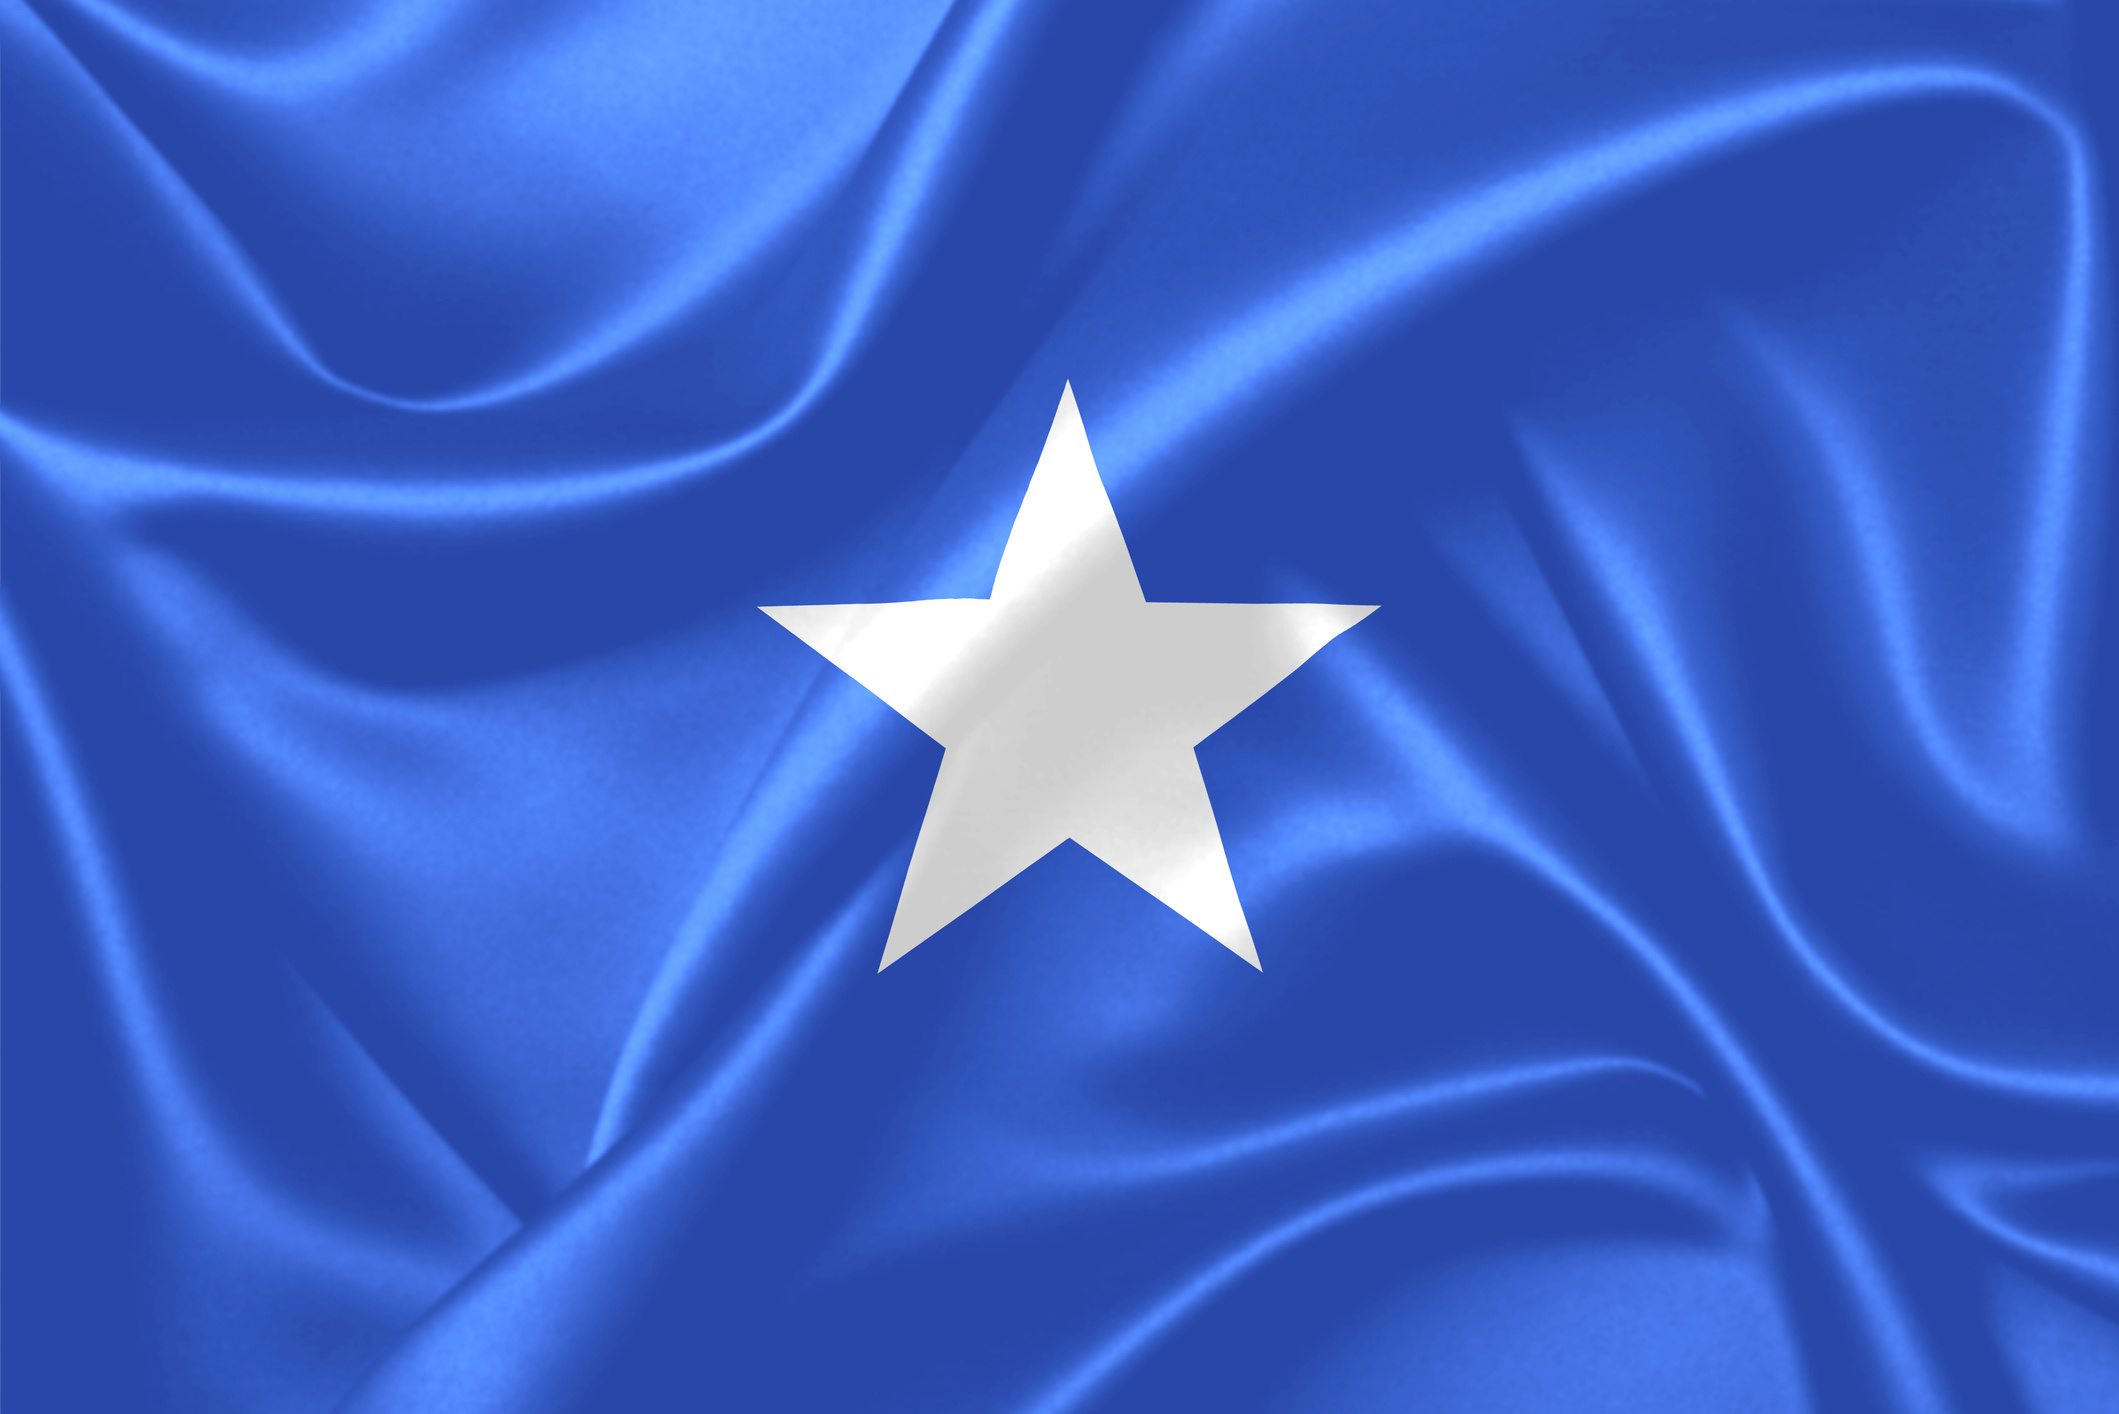 Somalia, Troop withdrawal, CGTN Africa, Peacekeeping mission, 2120x1420 HD Desktop